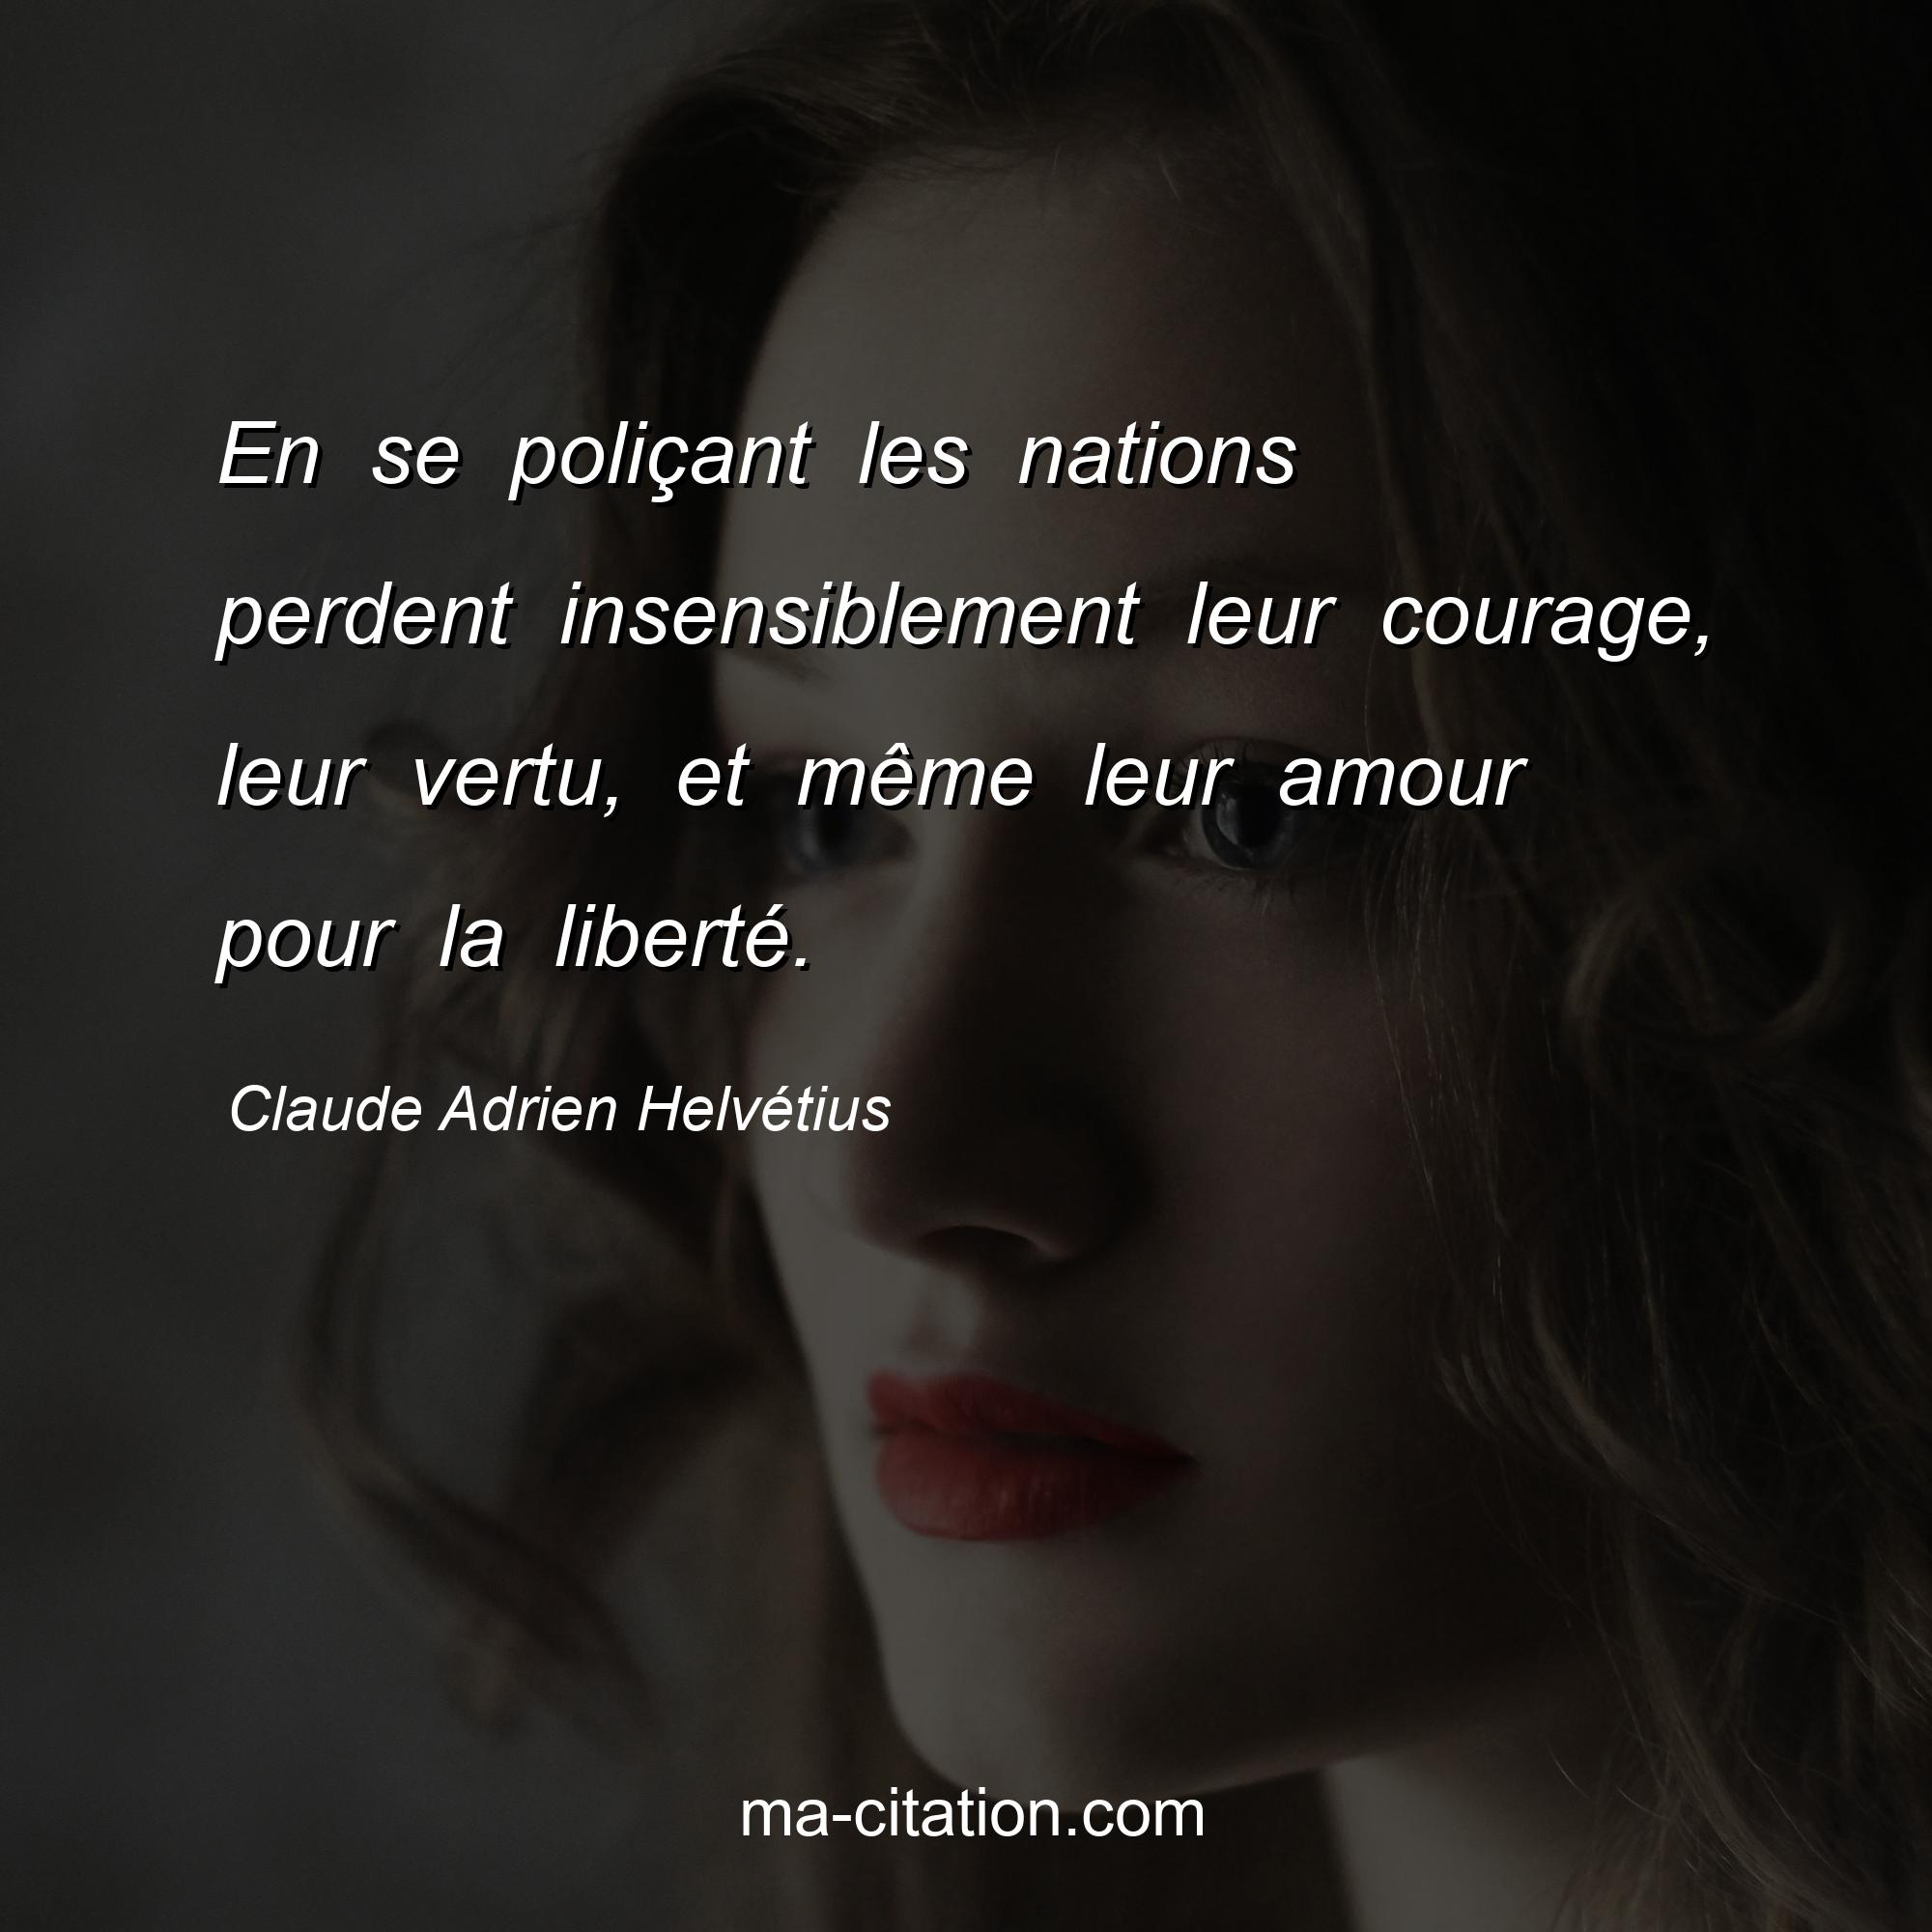 Claude Adrien Helvétius : En se poliçant les nations perdent insensiblement leur courage, leur vertu, et même leur amour pour la liberté.